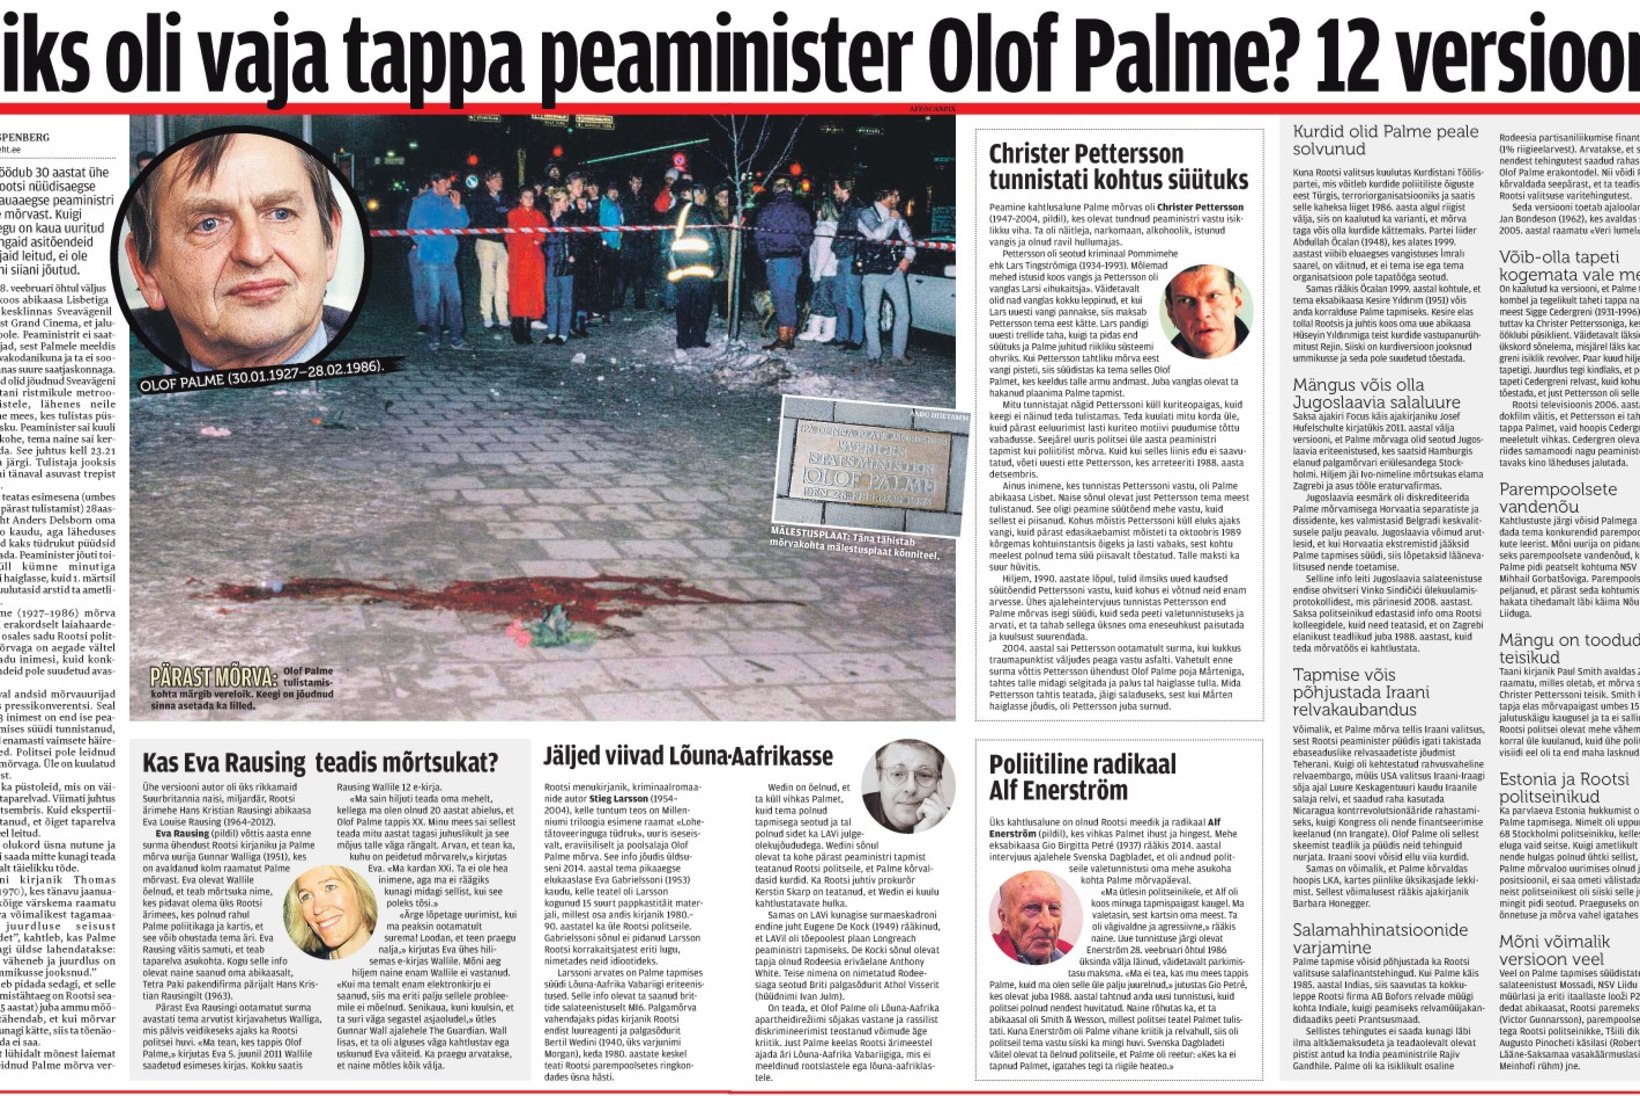 ÕL ARHIIV | Miks oli vaja tappa peaminister Olof Palme? 12 versiooni